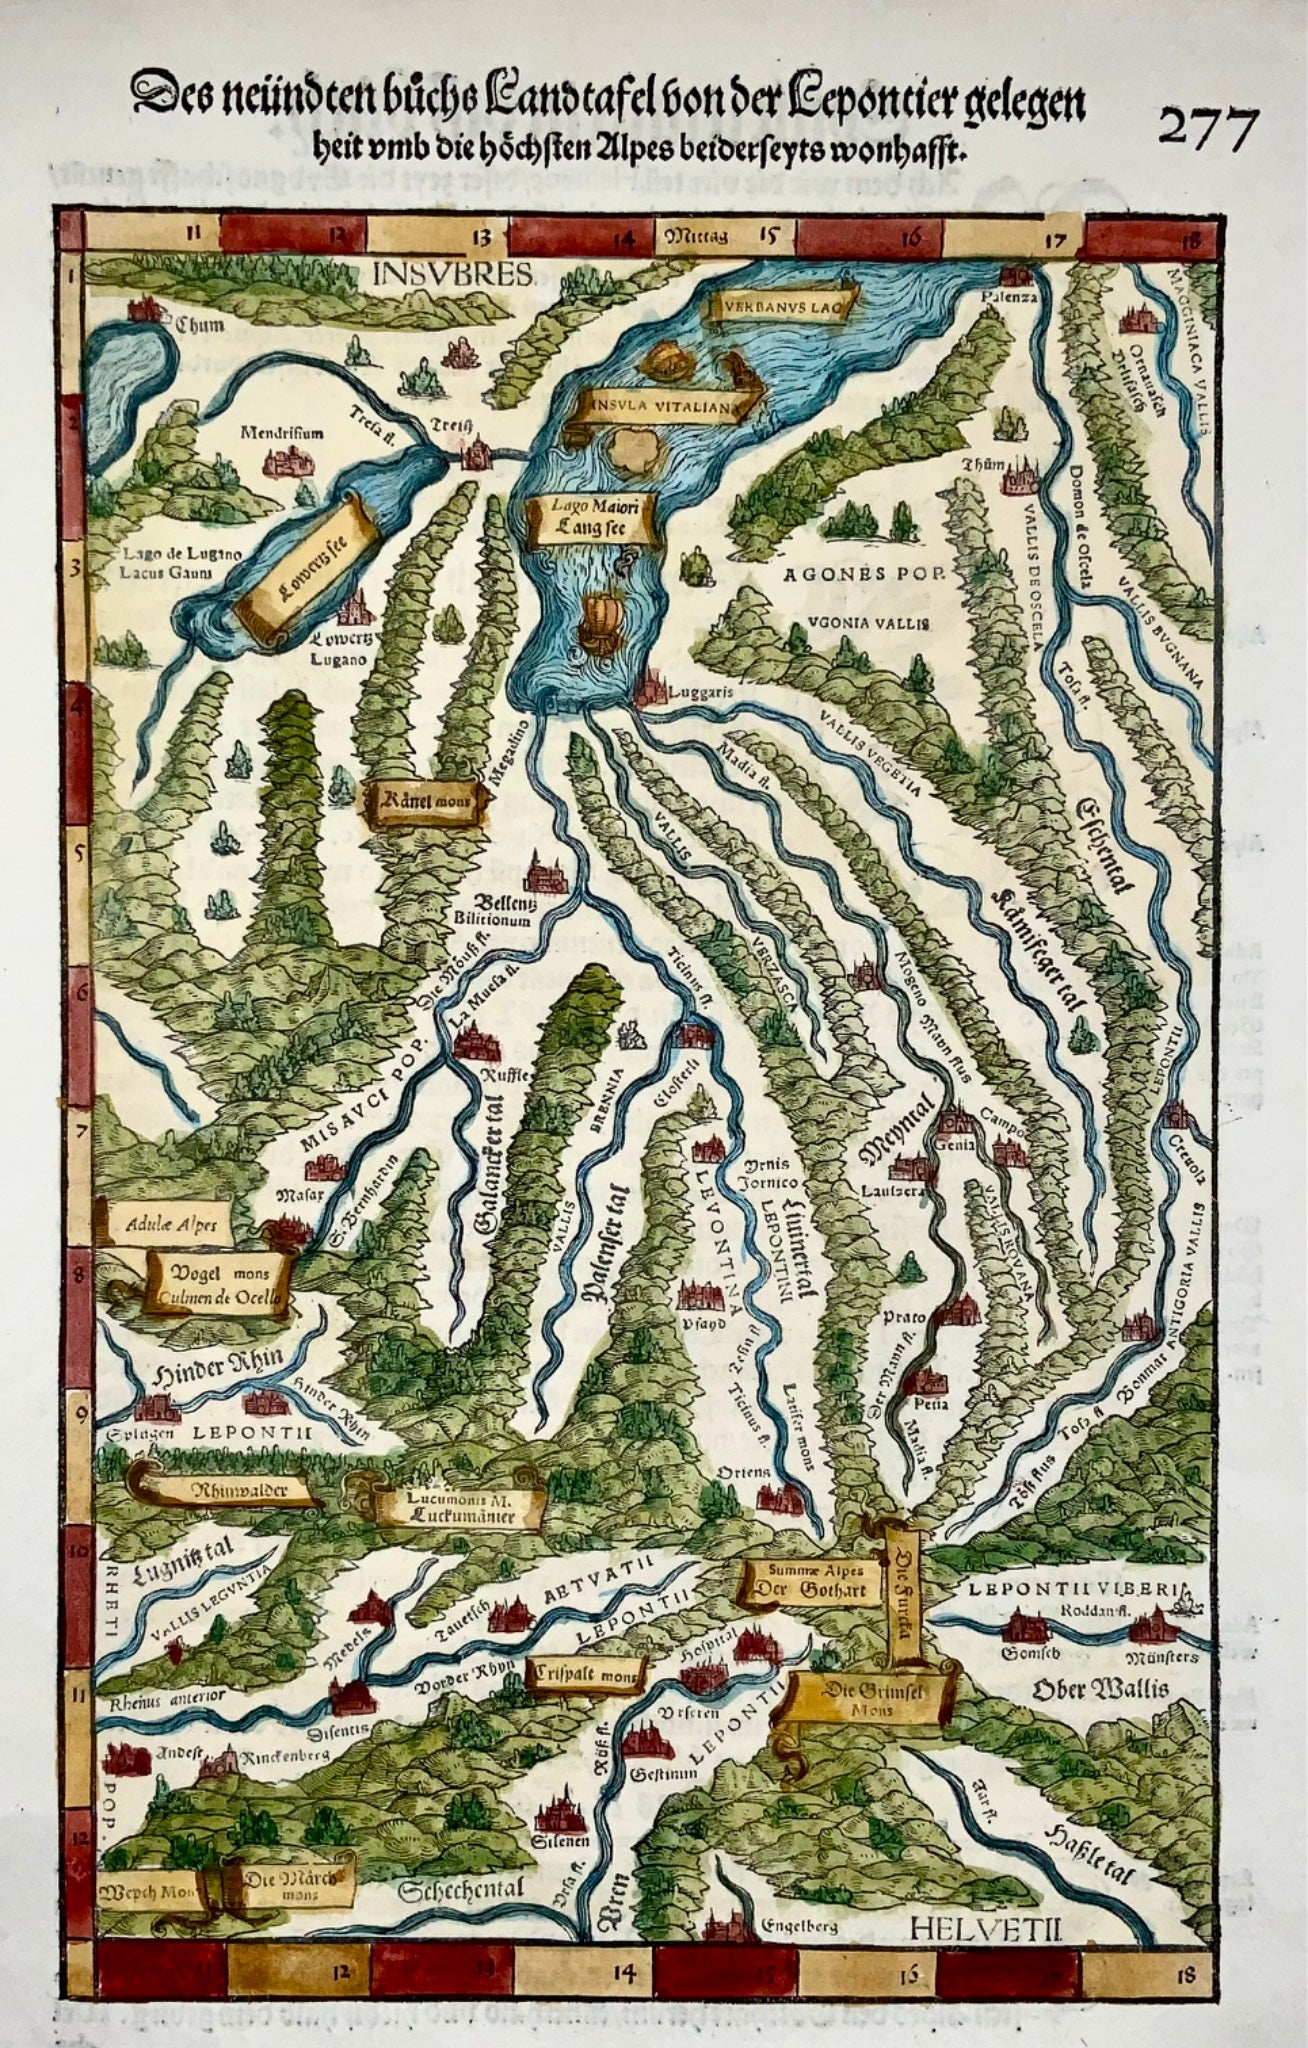 1548 Joh. Stumpf, Southern Switzerland, Tessin, Valais, folio woodcut map